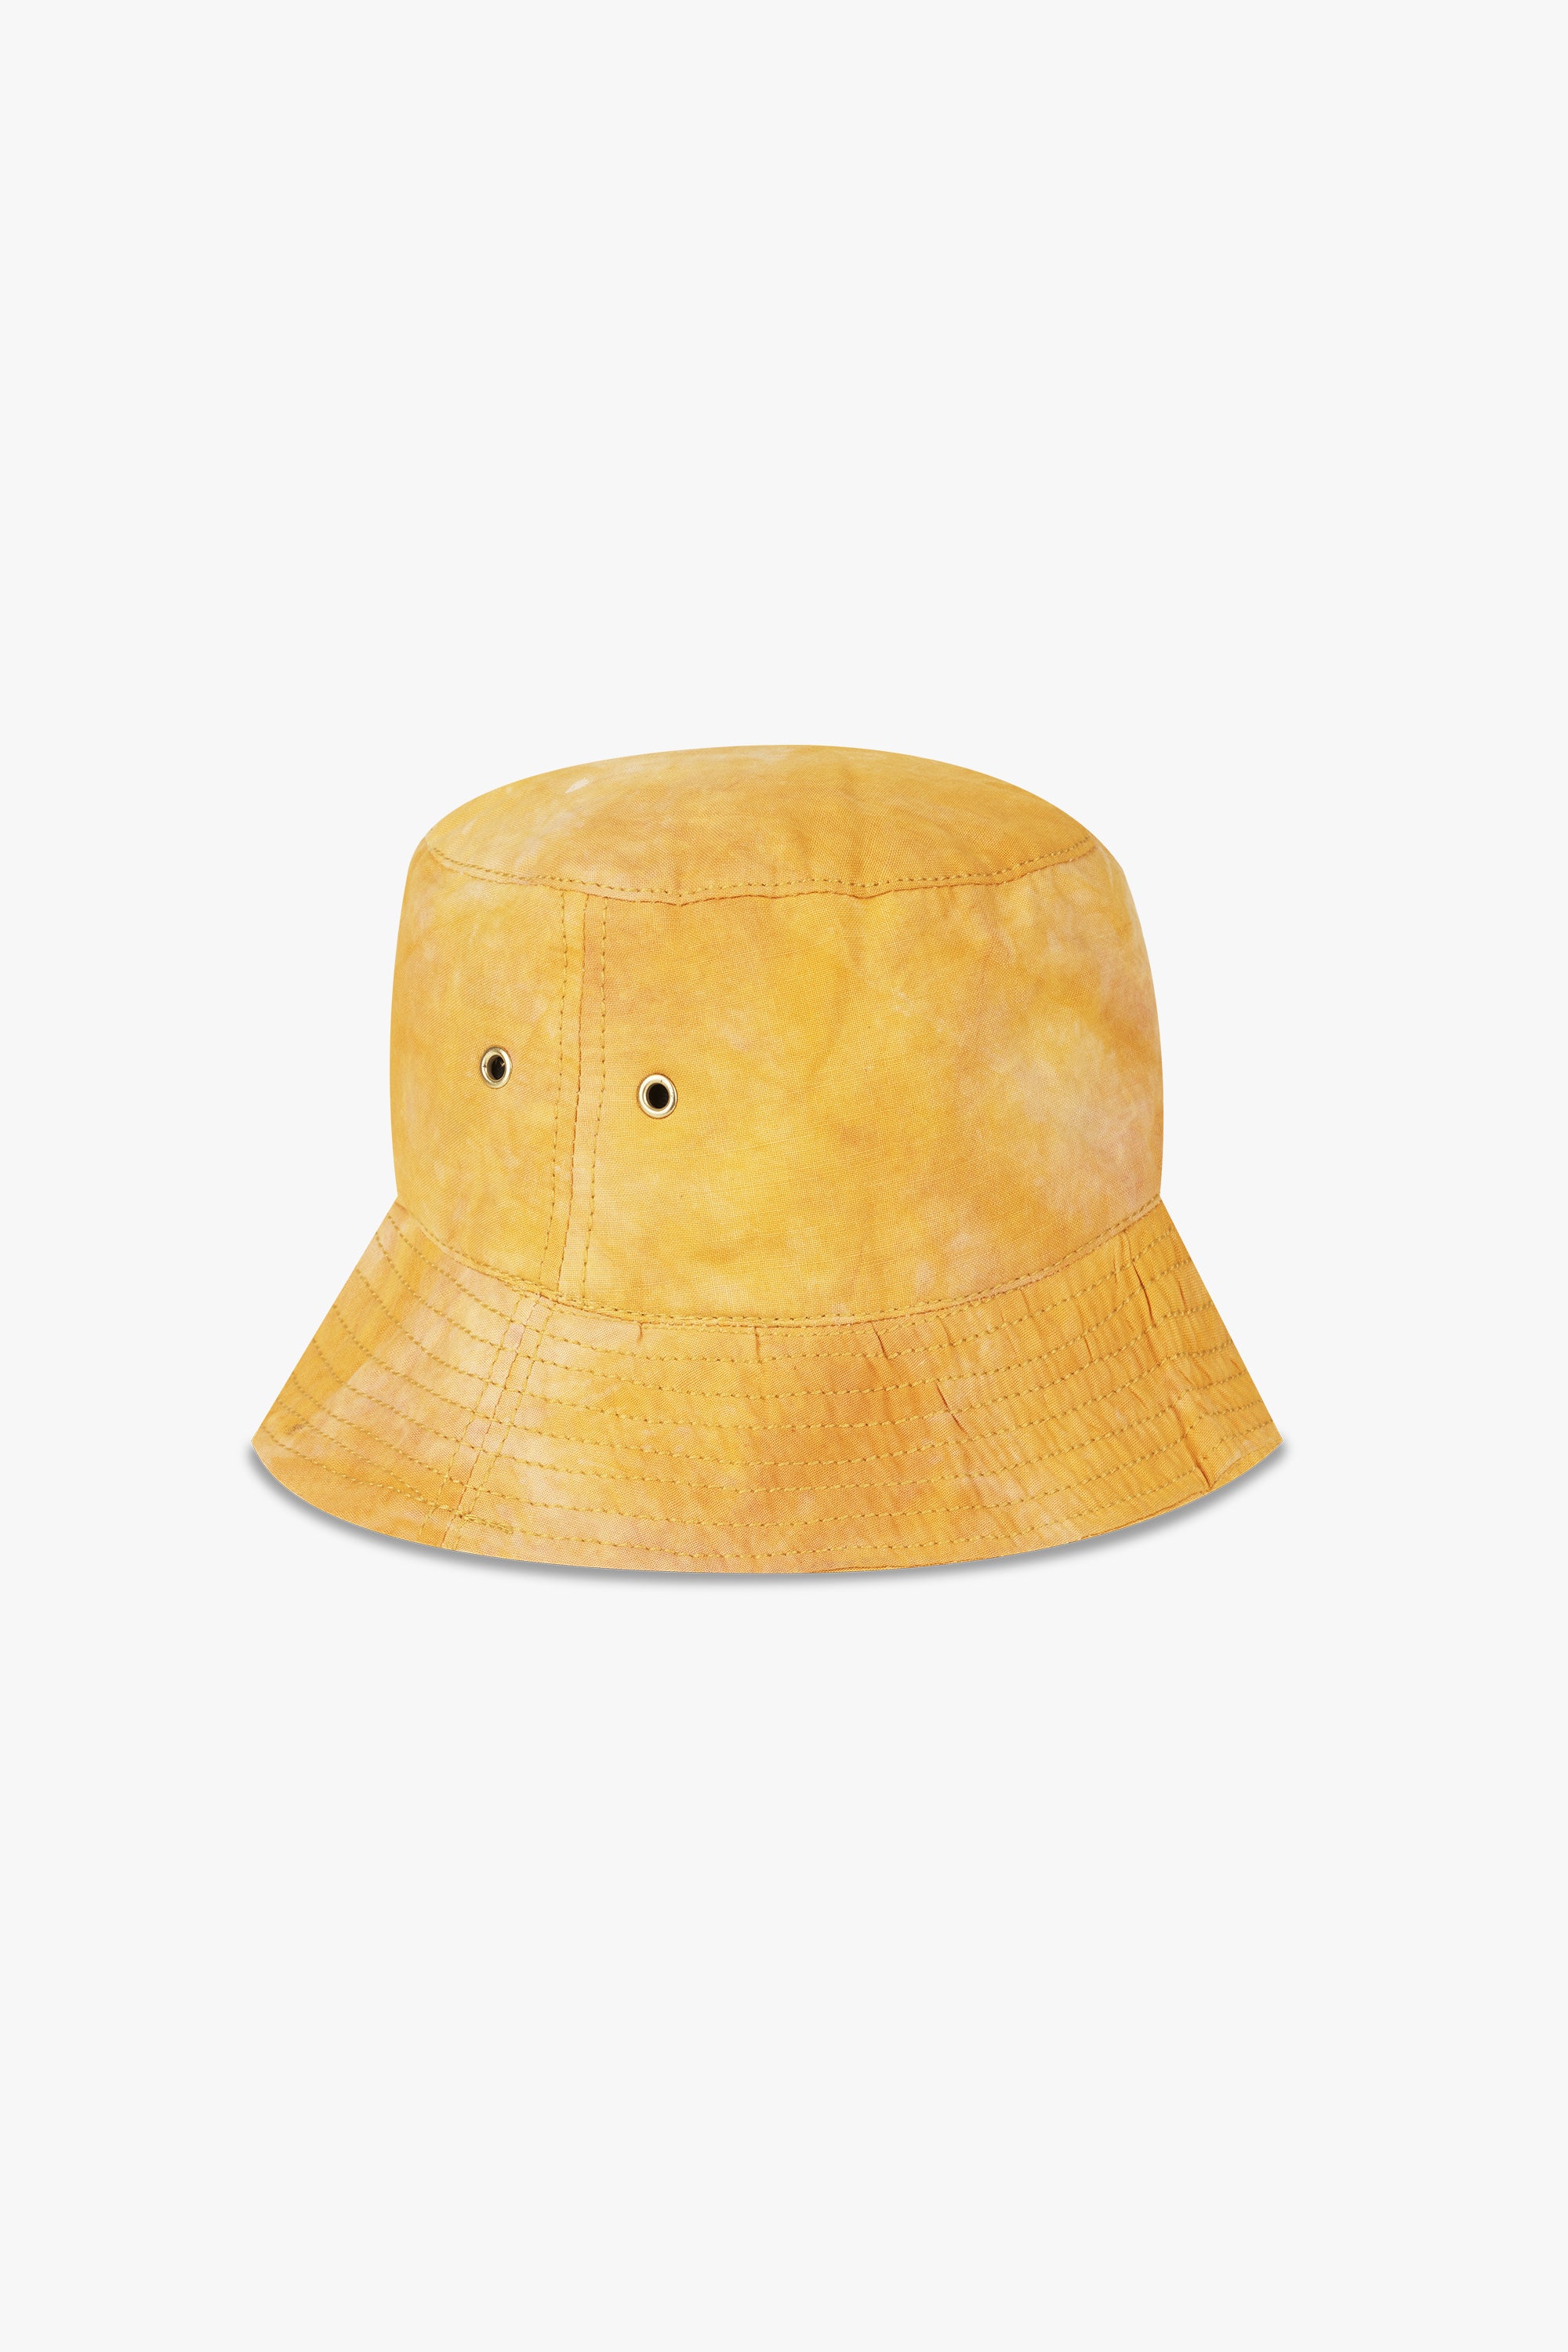 Tie-Dye Bucket Hat Yellow